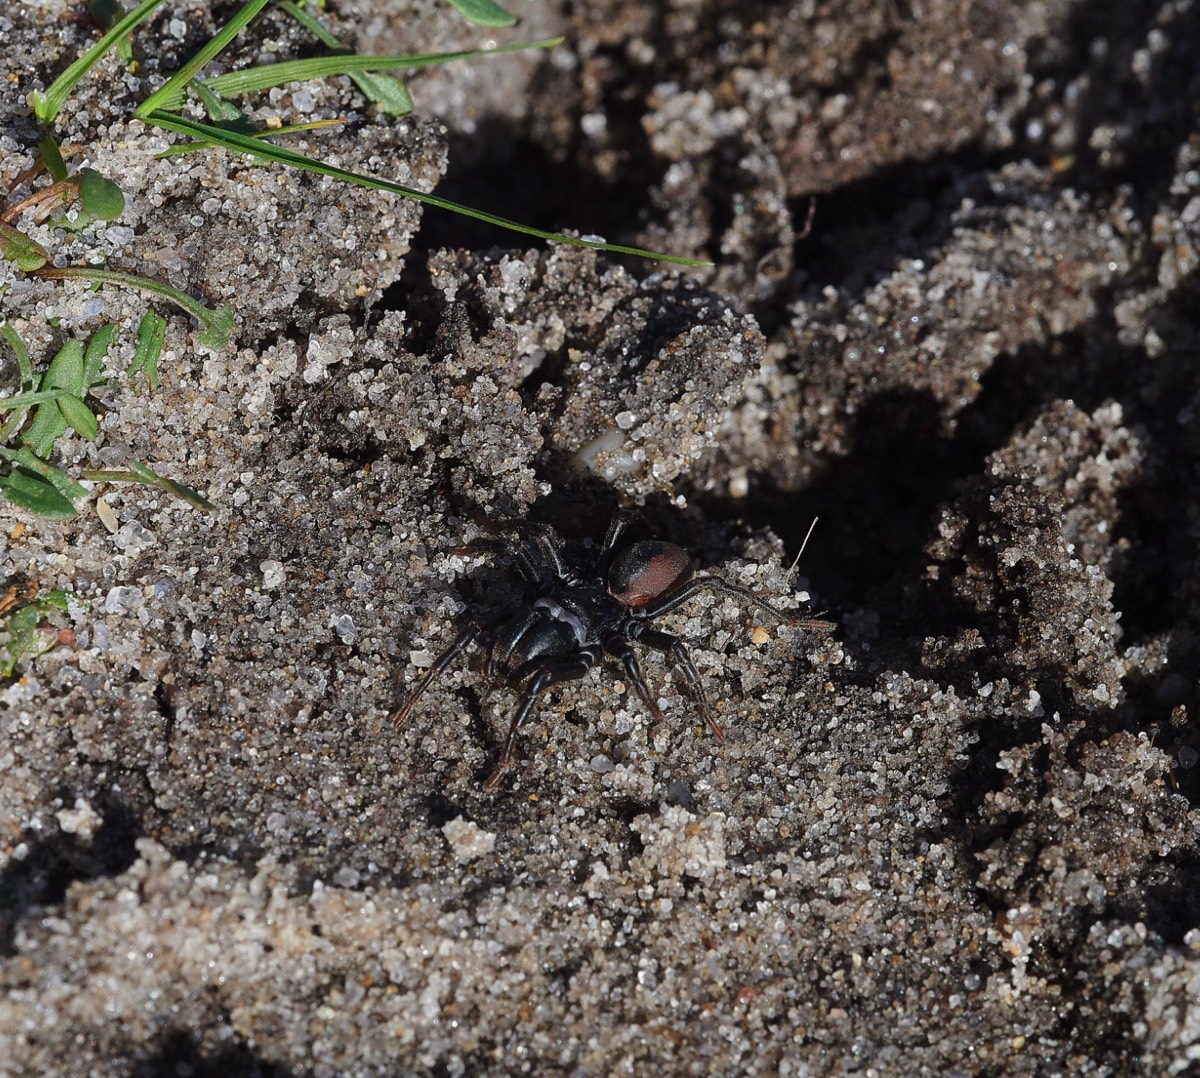 Purseweb Spider - Dersingham Bog 29/02/20